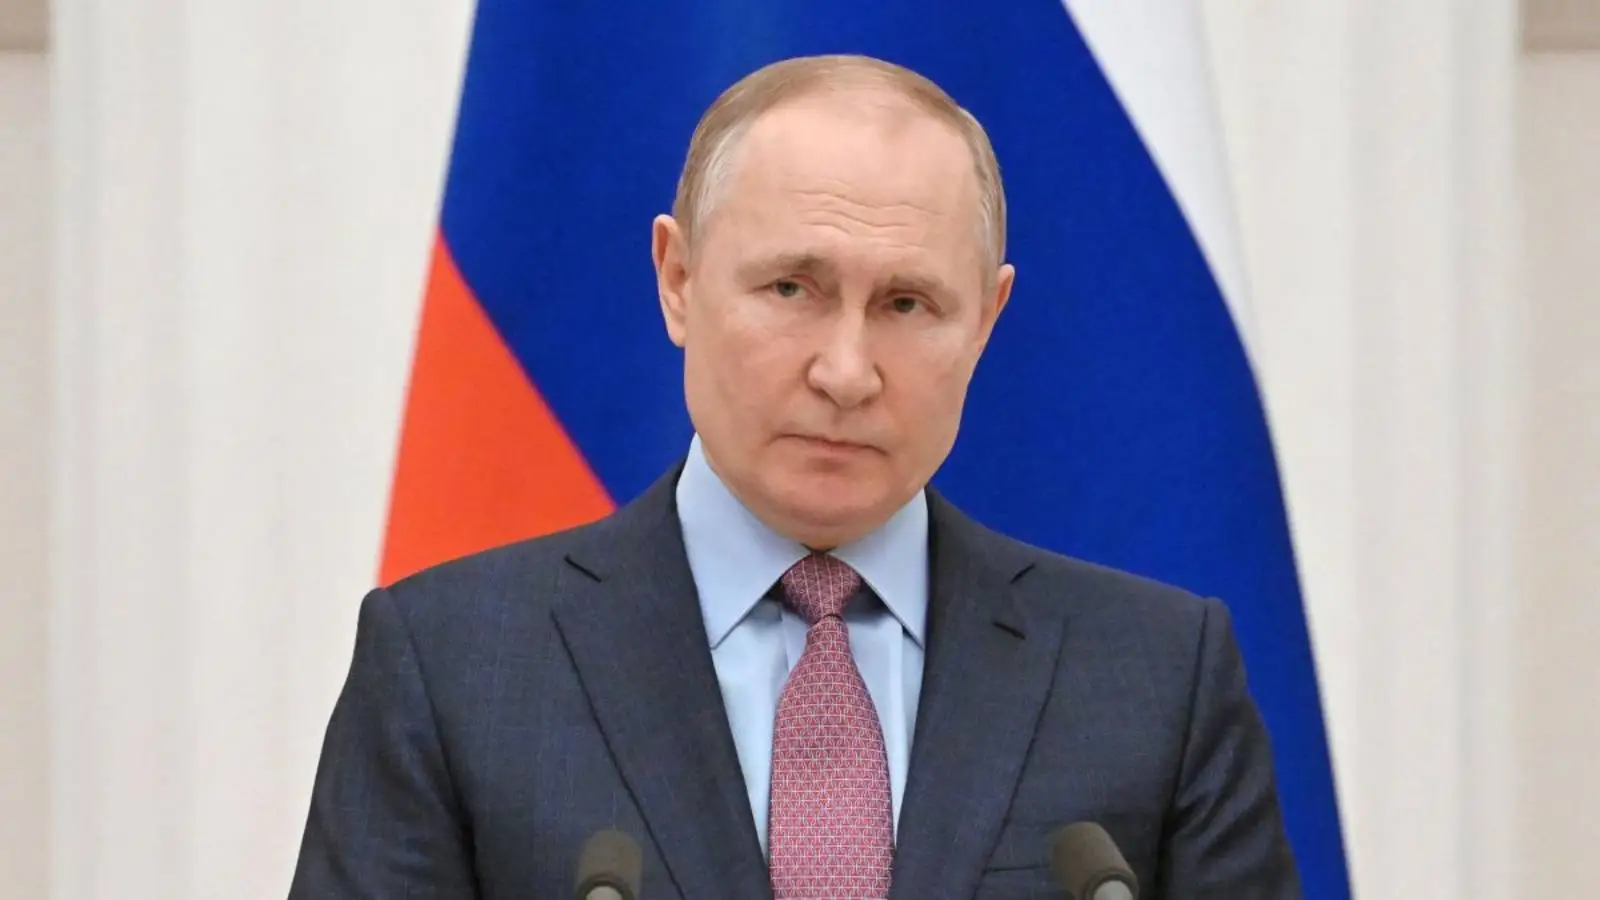 Vladimir Poetin blijft de verovering van de gehele Donbas-regio van Oekraïne eisen